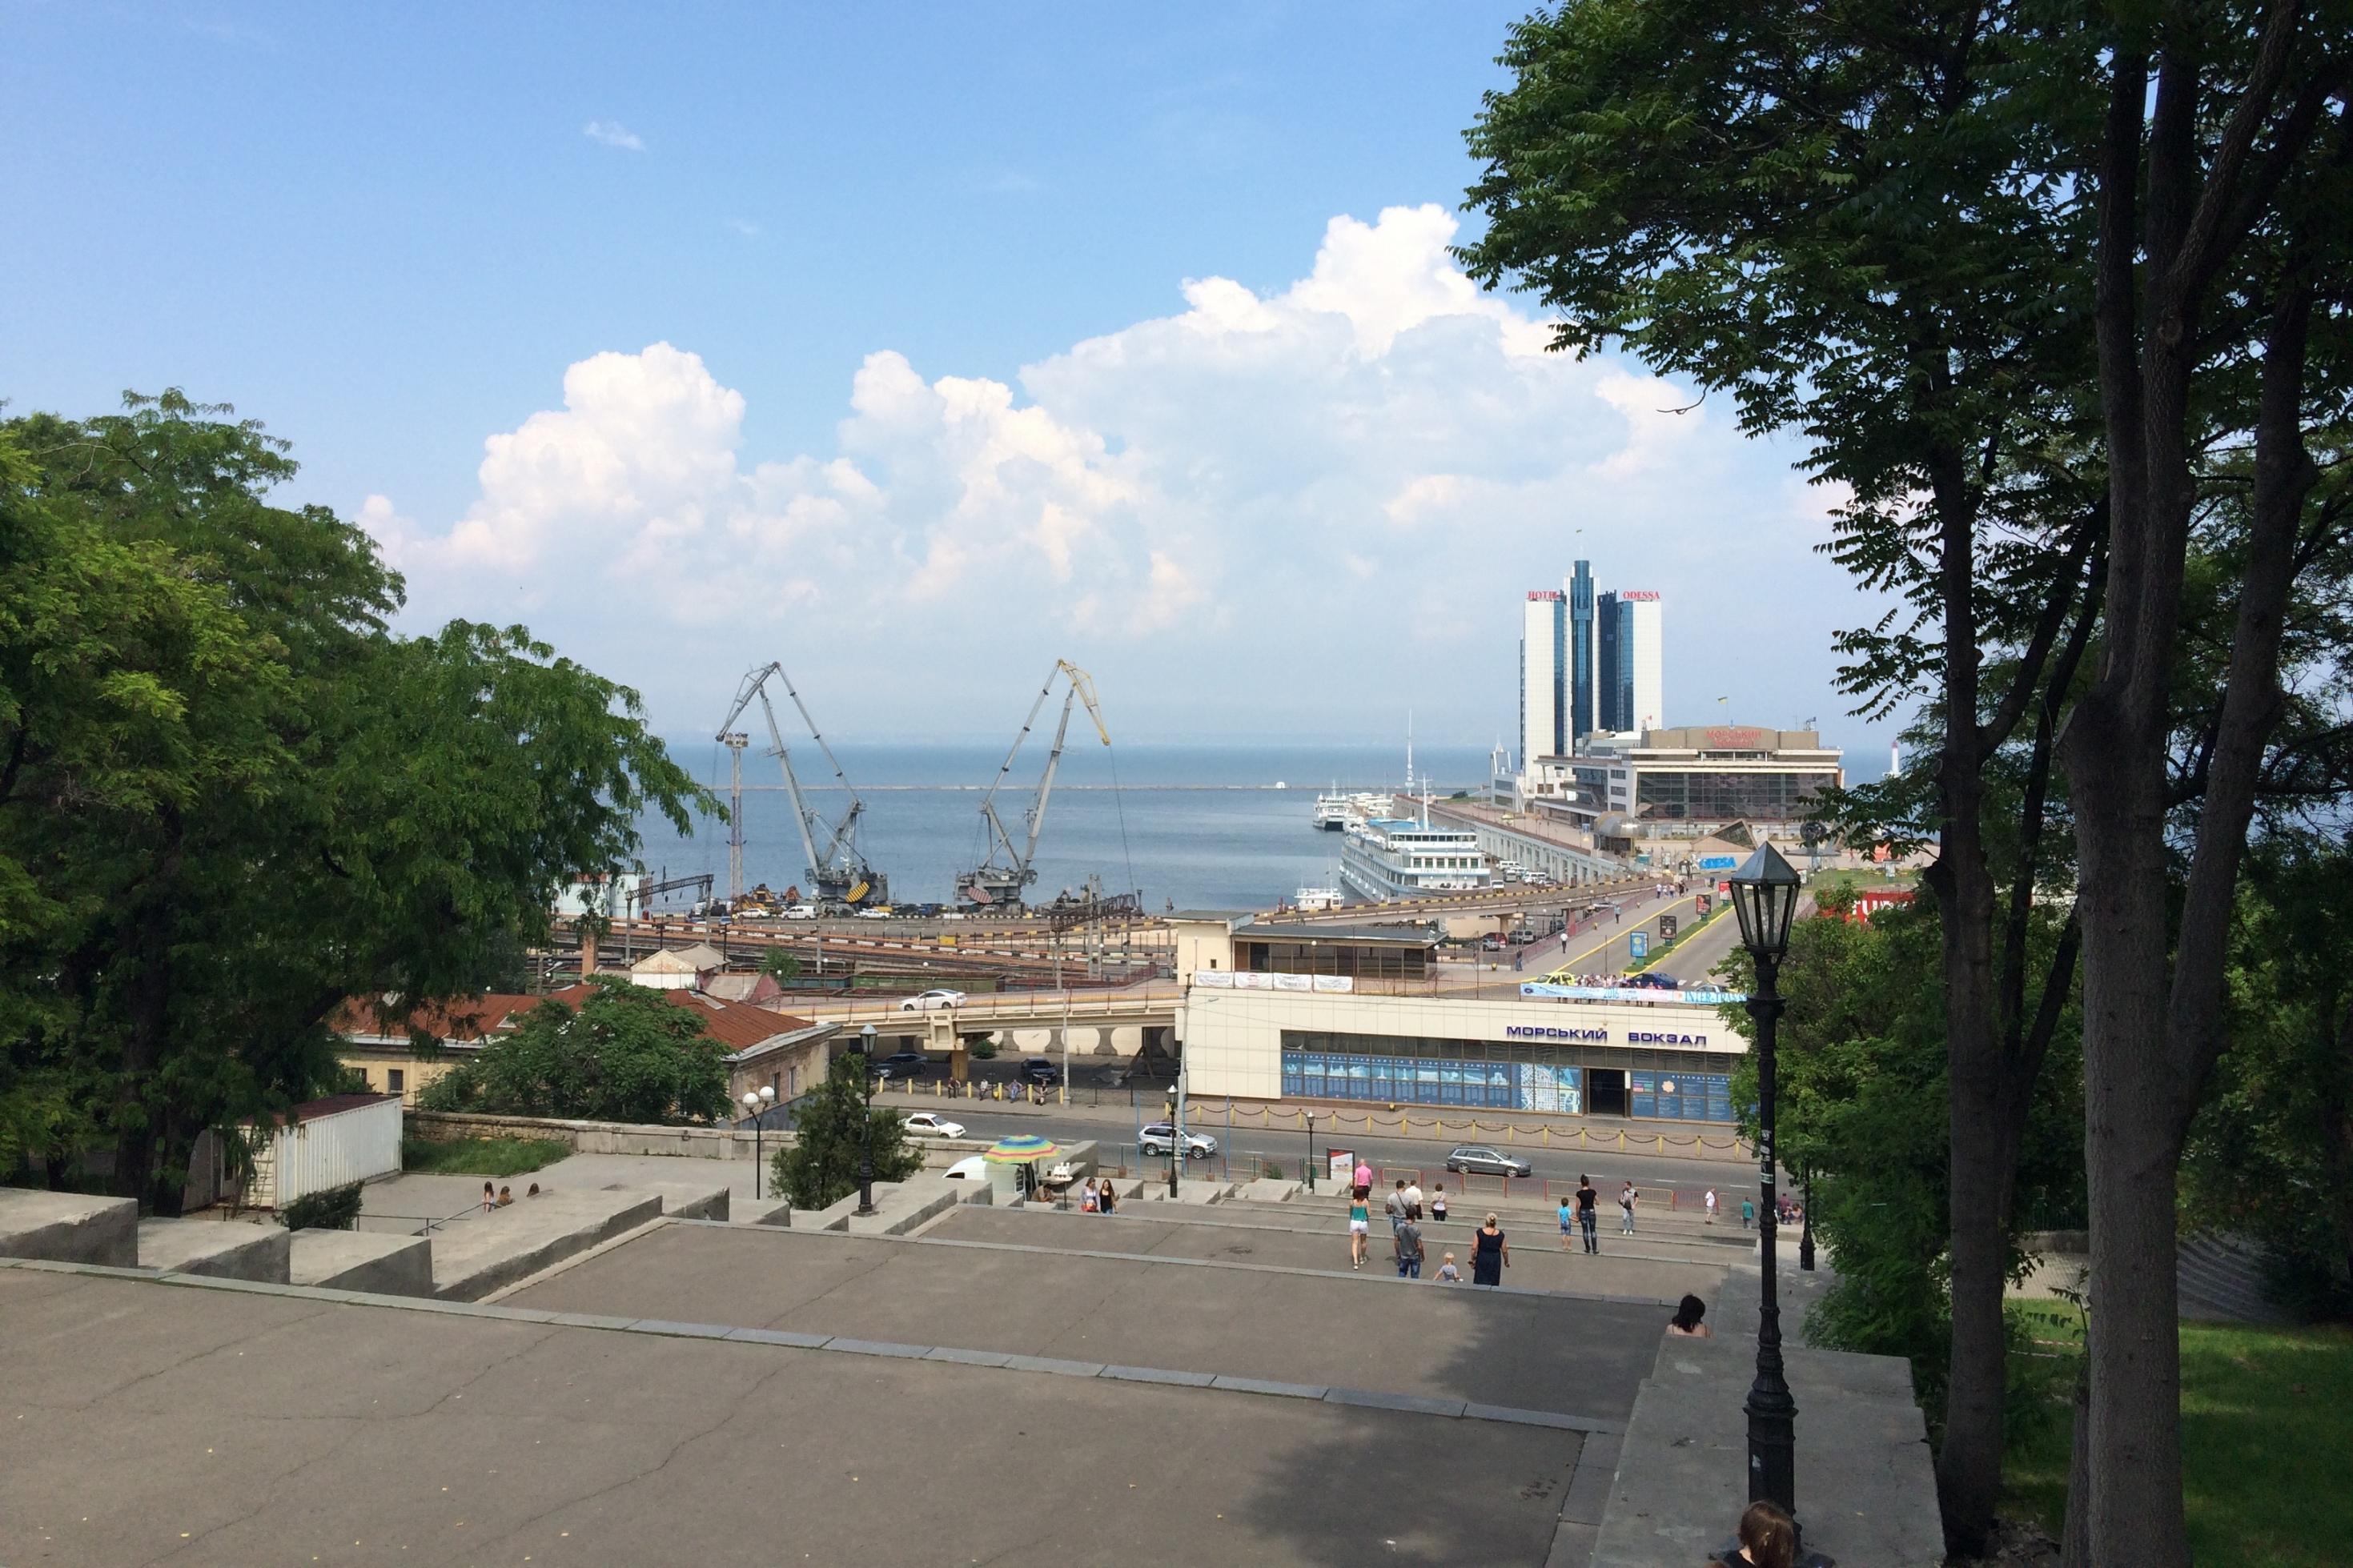 Von einer Treppe, die im Film „Panzerkreuzer Potemkin“ eine wichtige Rolle spielt, blickt man auf den Hafen der ukrainischen Stadt Odessa